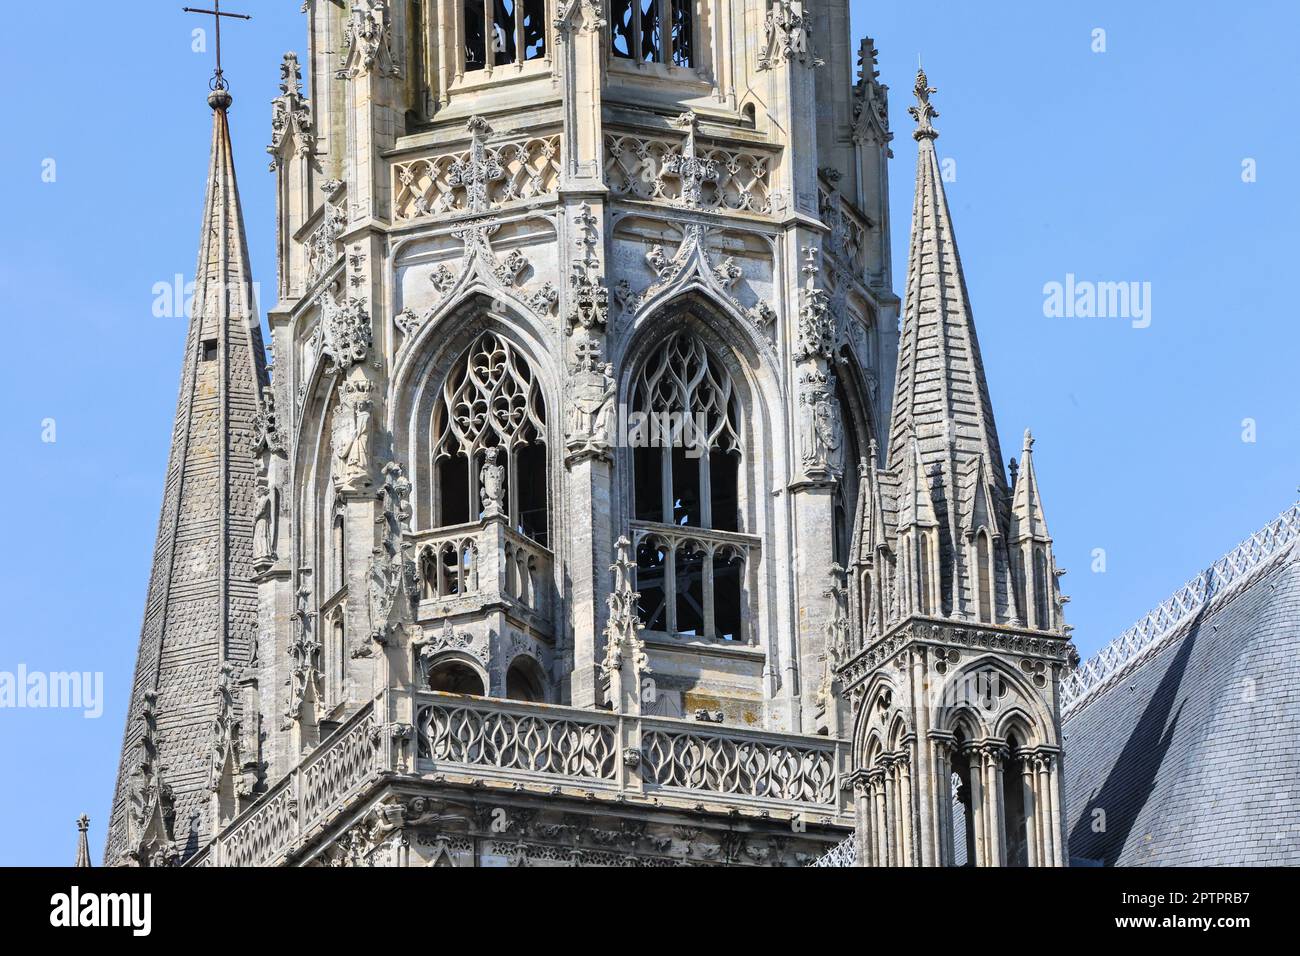 Bayeux Kathedrale, auch bekannt als, Kathedrale unserer Lieben Frau von Bayeux, Notre Dame de Bayeux, ist,a,gotisch,römisch-katholisch,Kirche,gelegen,in,The,Centre,of,Bayeux.Bayeux,a,Stadt,Kommune,in,The,Calvados,Department,in,Normandie,in,Nordeuropa,die Heimat,Nordeuropa,die Heimat,die Westeuropa,die Bayman,die Heimat,die Heimat,die Nordeuropa,die Heimat,die Westeuropa,die Heimat,die,die Westeuropa,die,die Bayquie,die 1066,die Heimat,die Heimat,die Westeuropa,die,die,die,die,die,die,die,die,die, Stockfoto